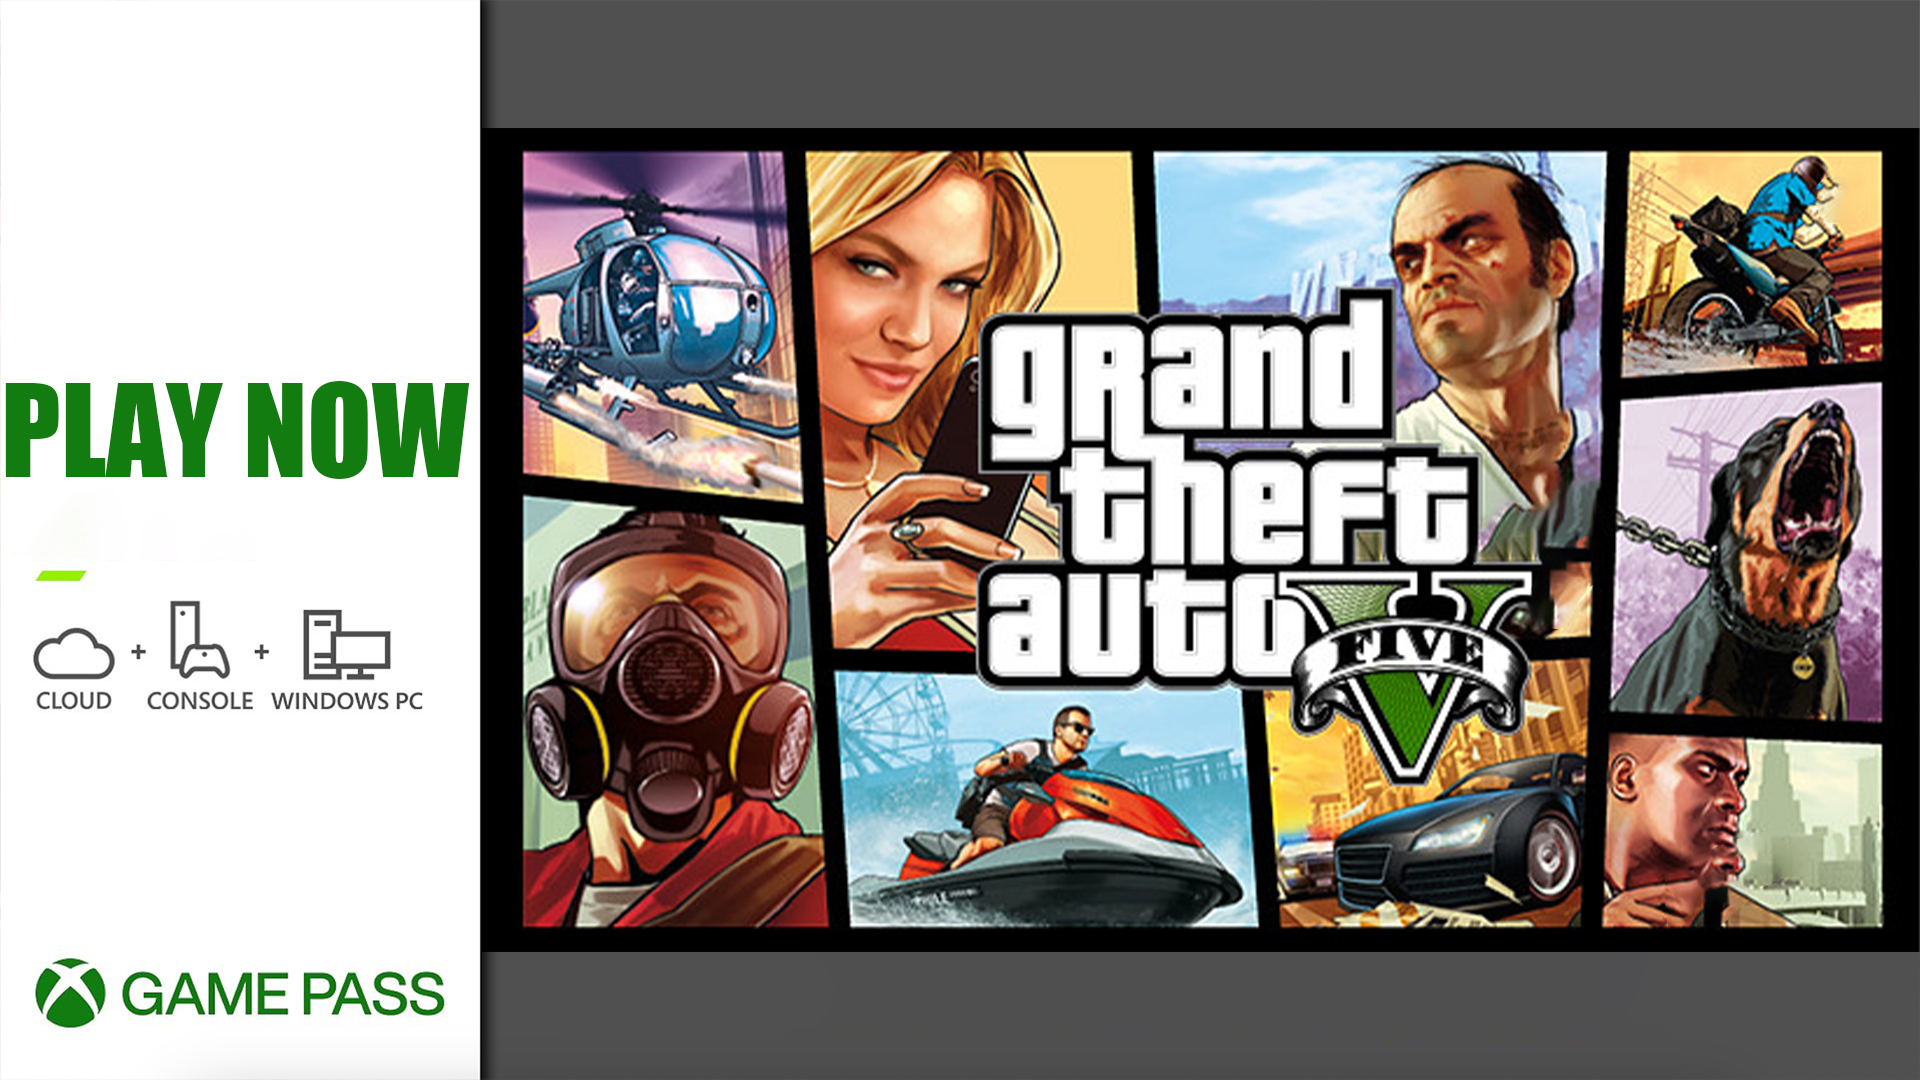 GTA V nu tilgængelig på Xbox Game Pass En spilverden ændres! Creo